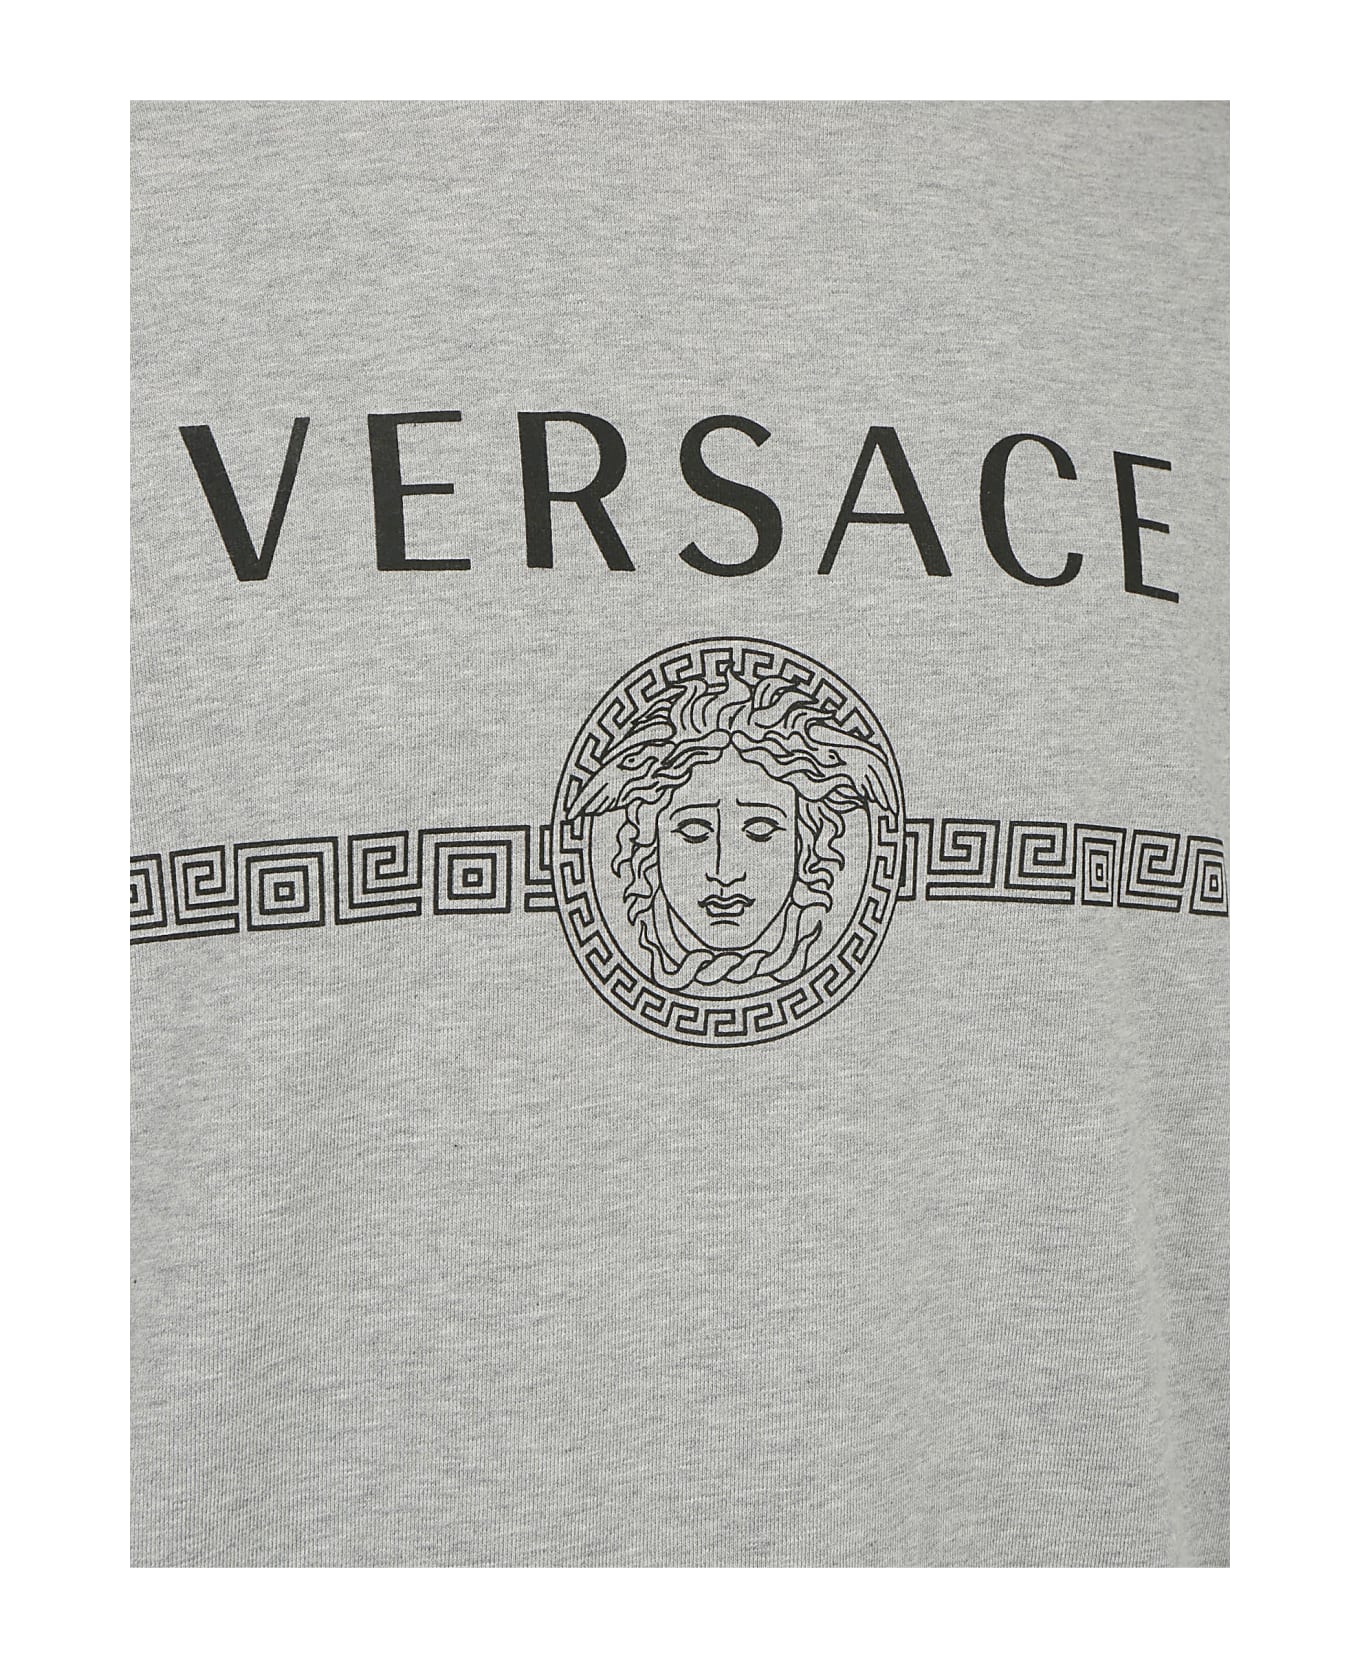 Versace Sweatshirt | italist